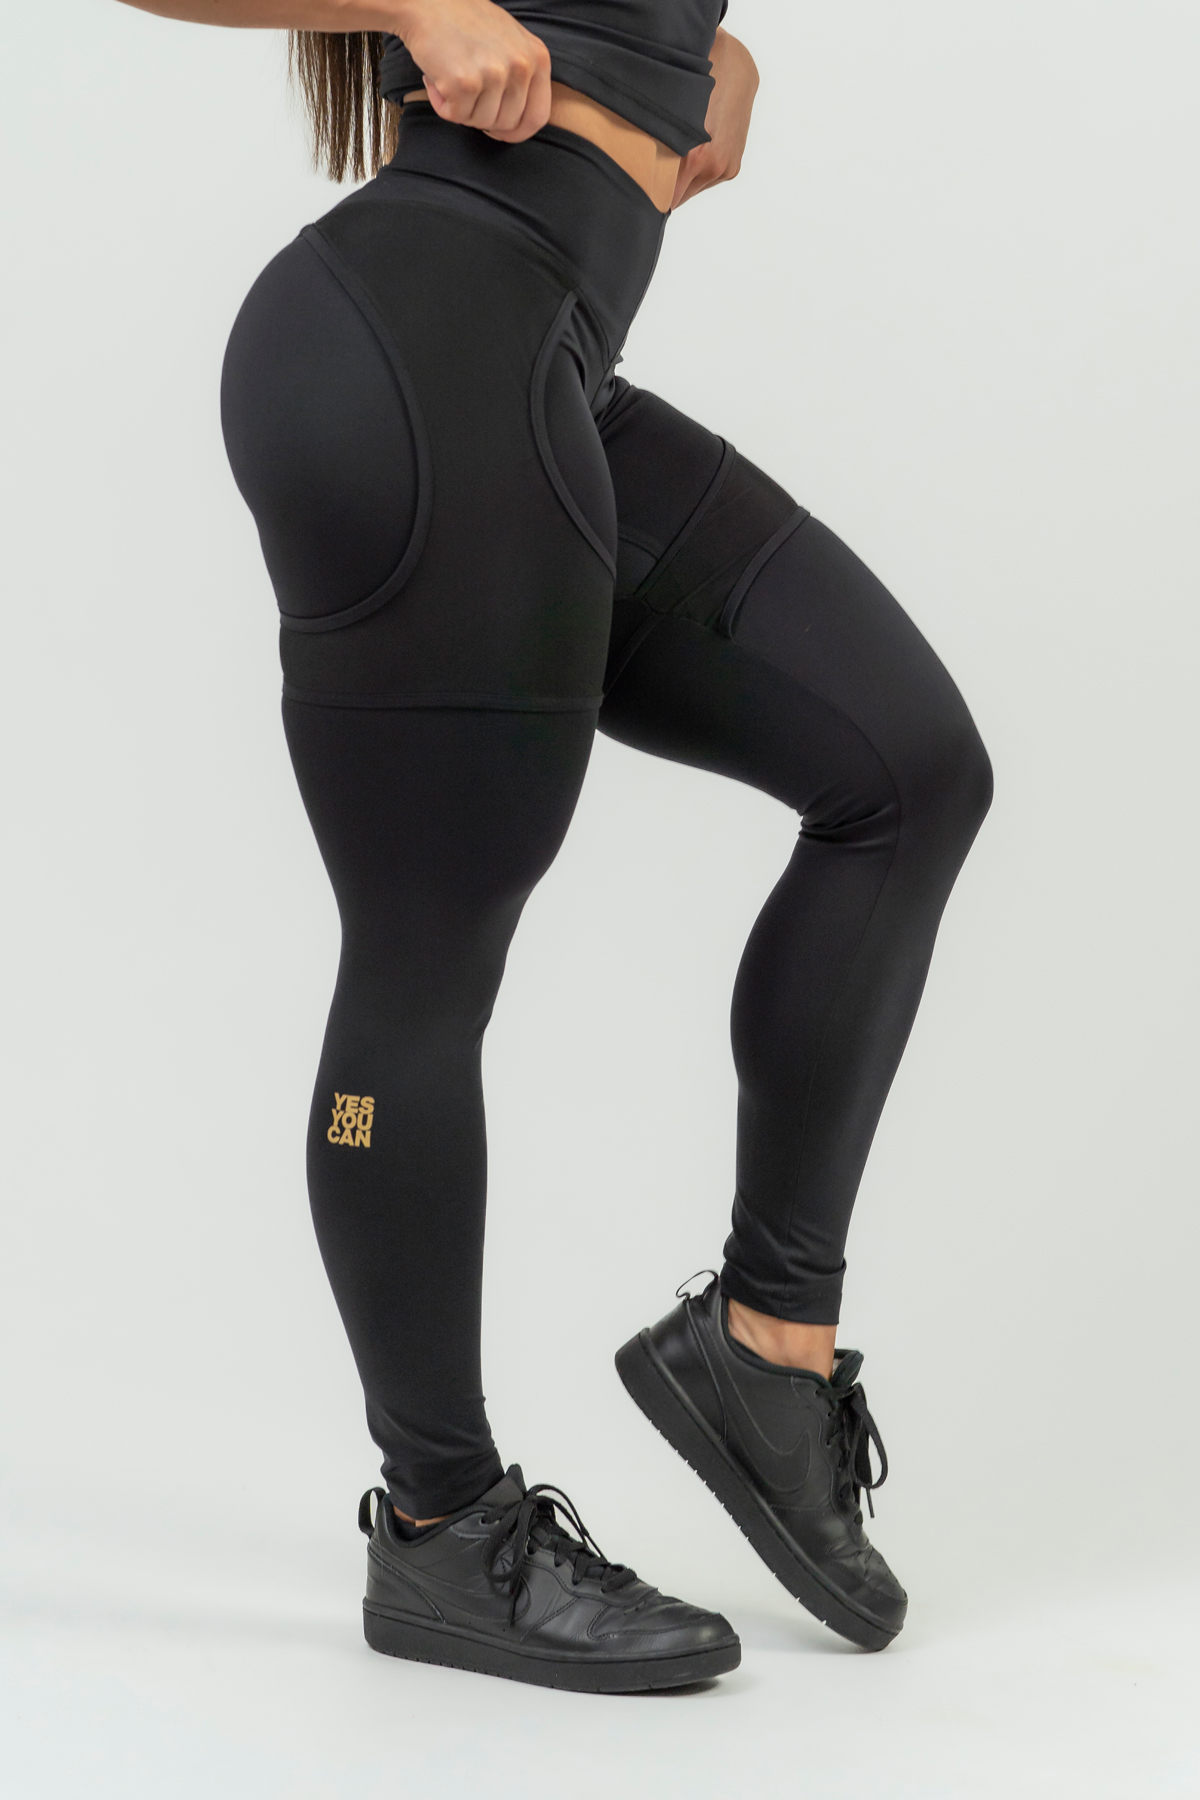 FOSA High-Waisted Plain Jeggings for Women's Active Sports Wear/Wool  leggings/Jeggings/Nylon leggings/Leggings